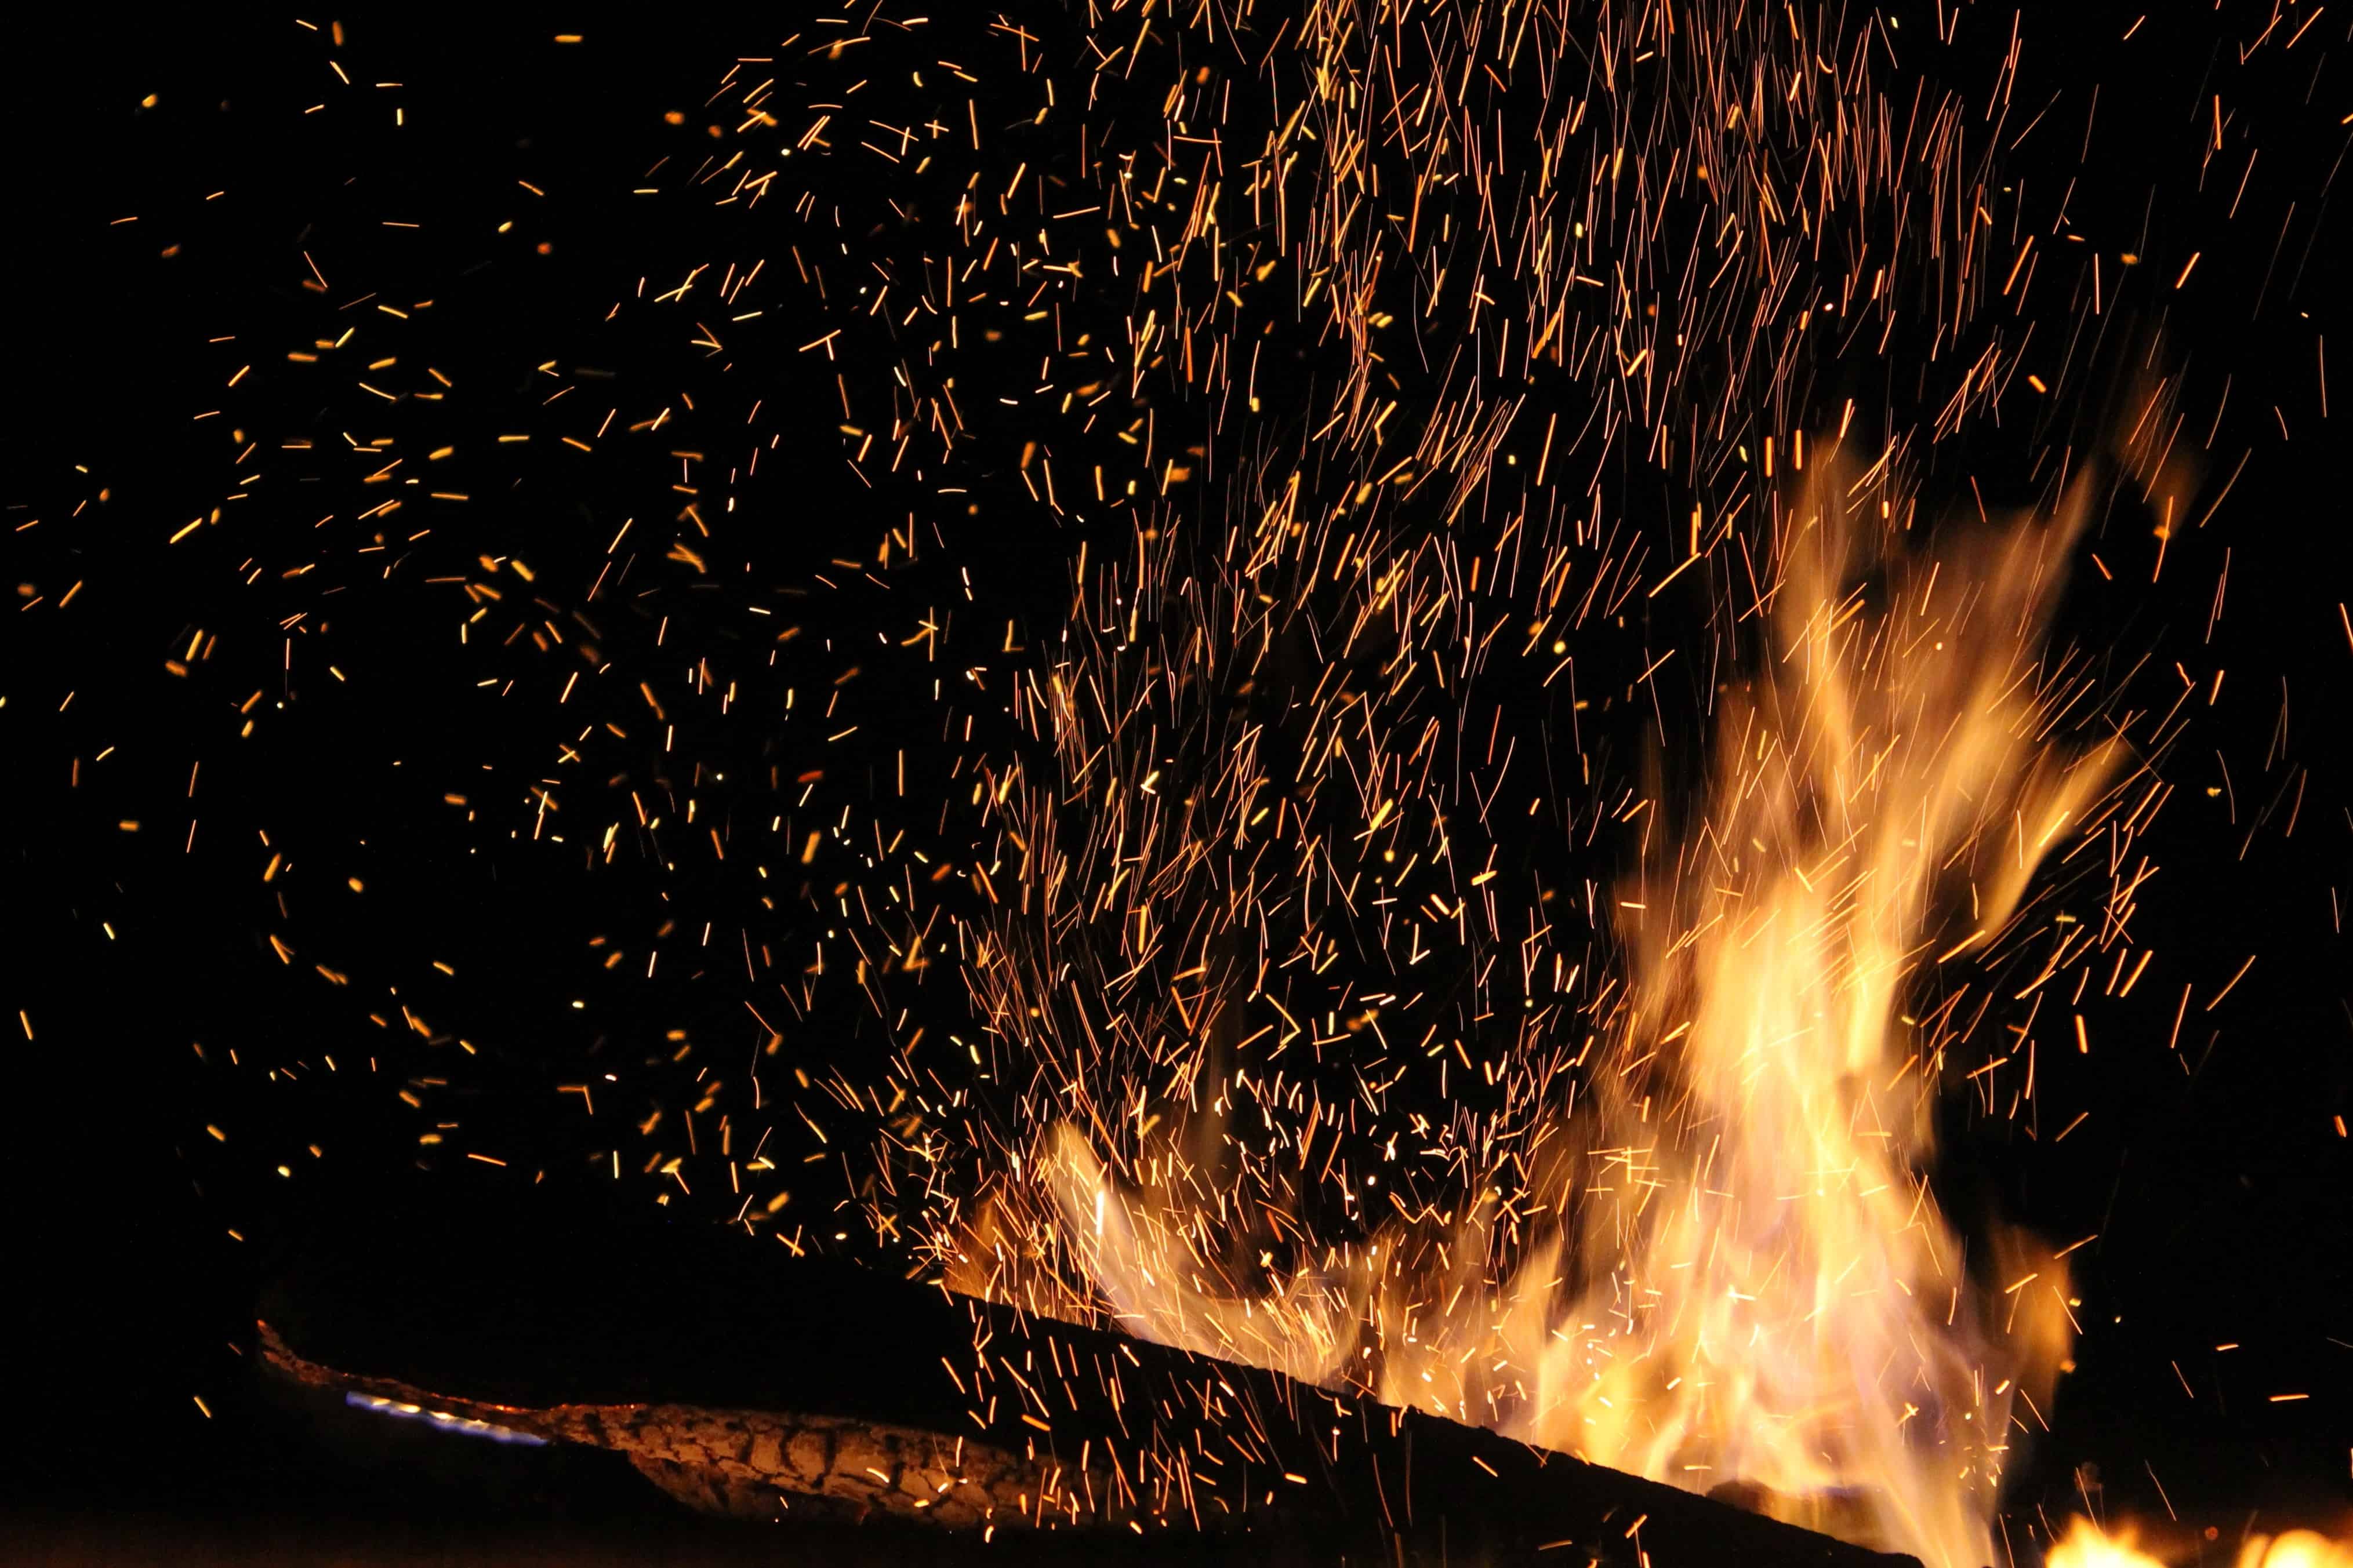 Fire flames free images, public domain images